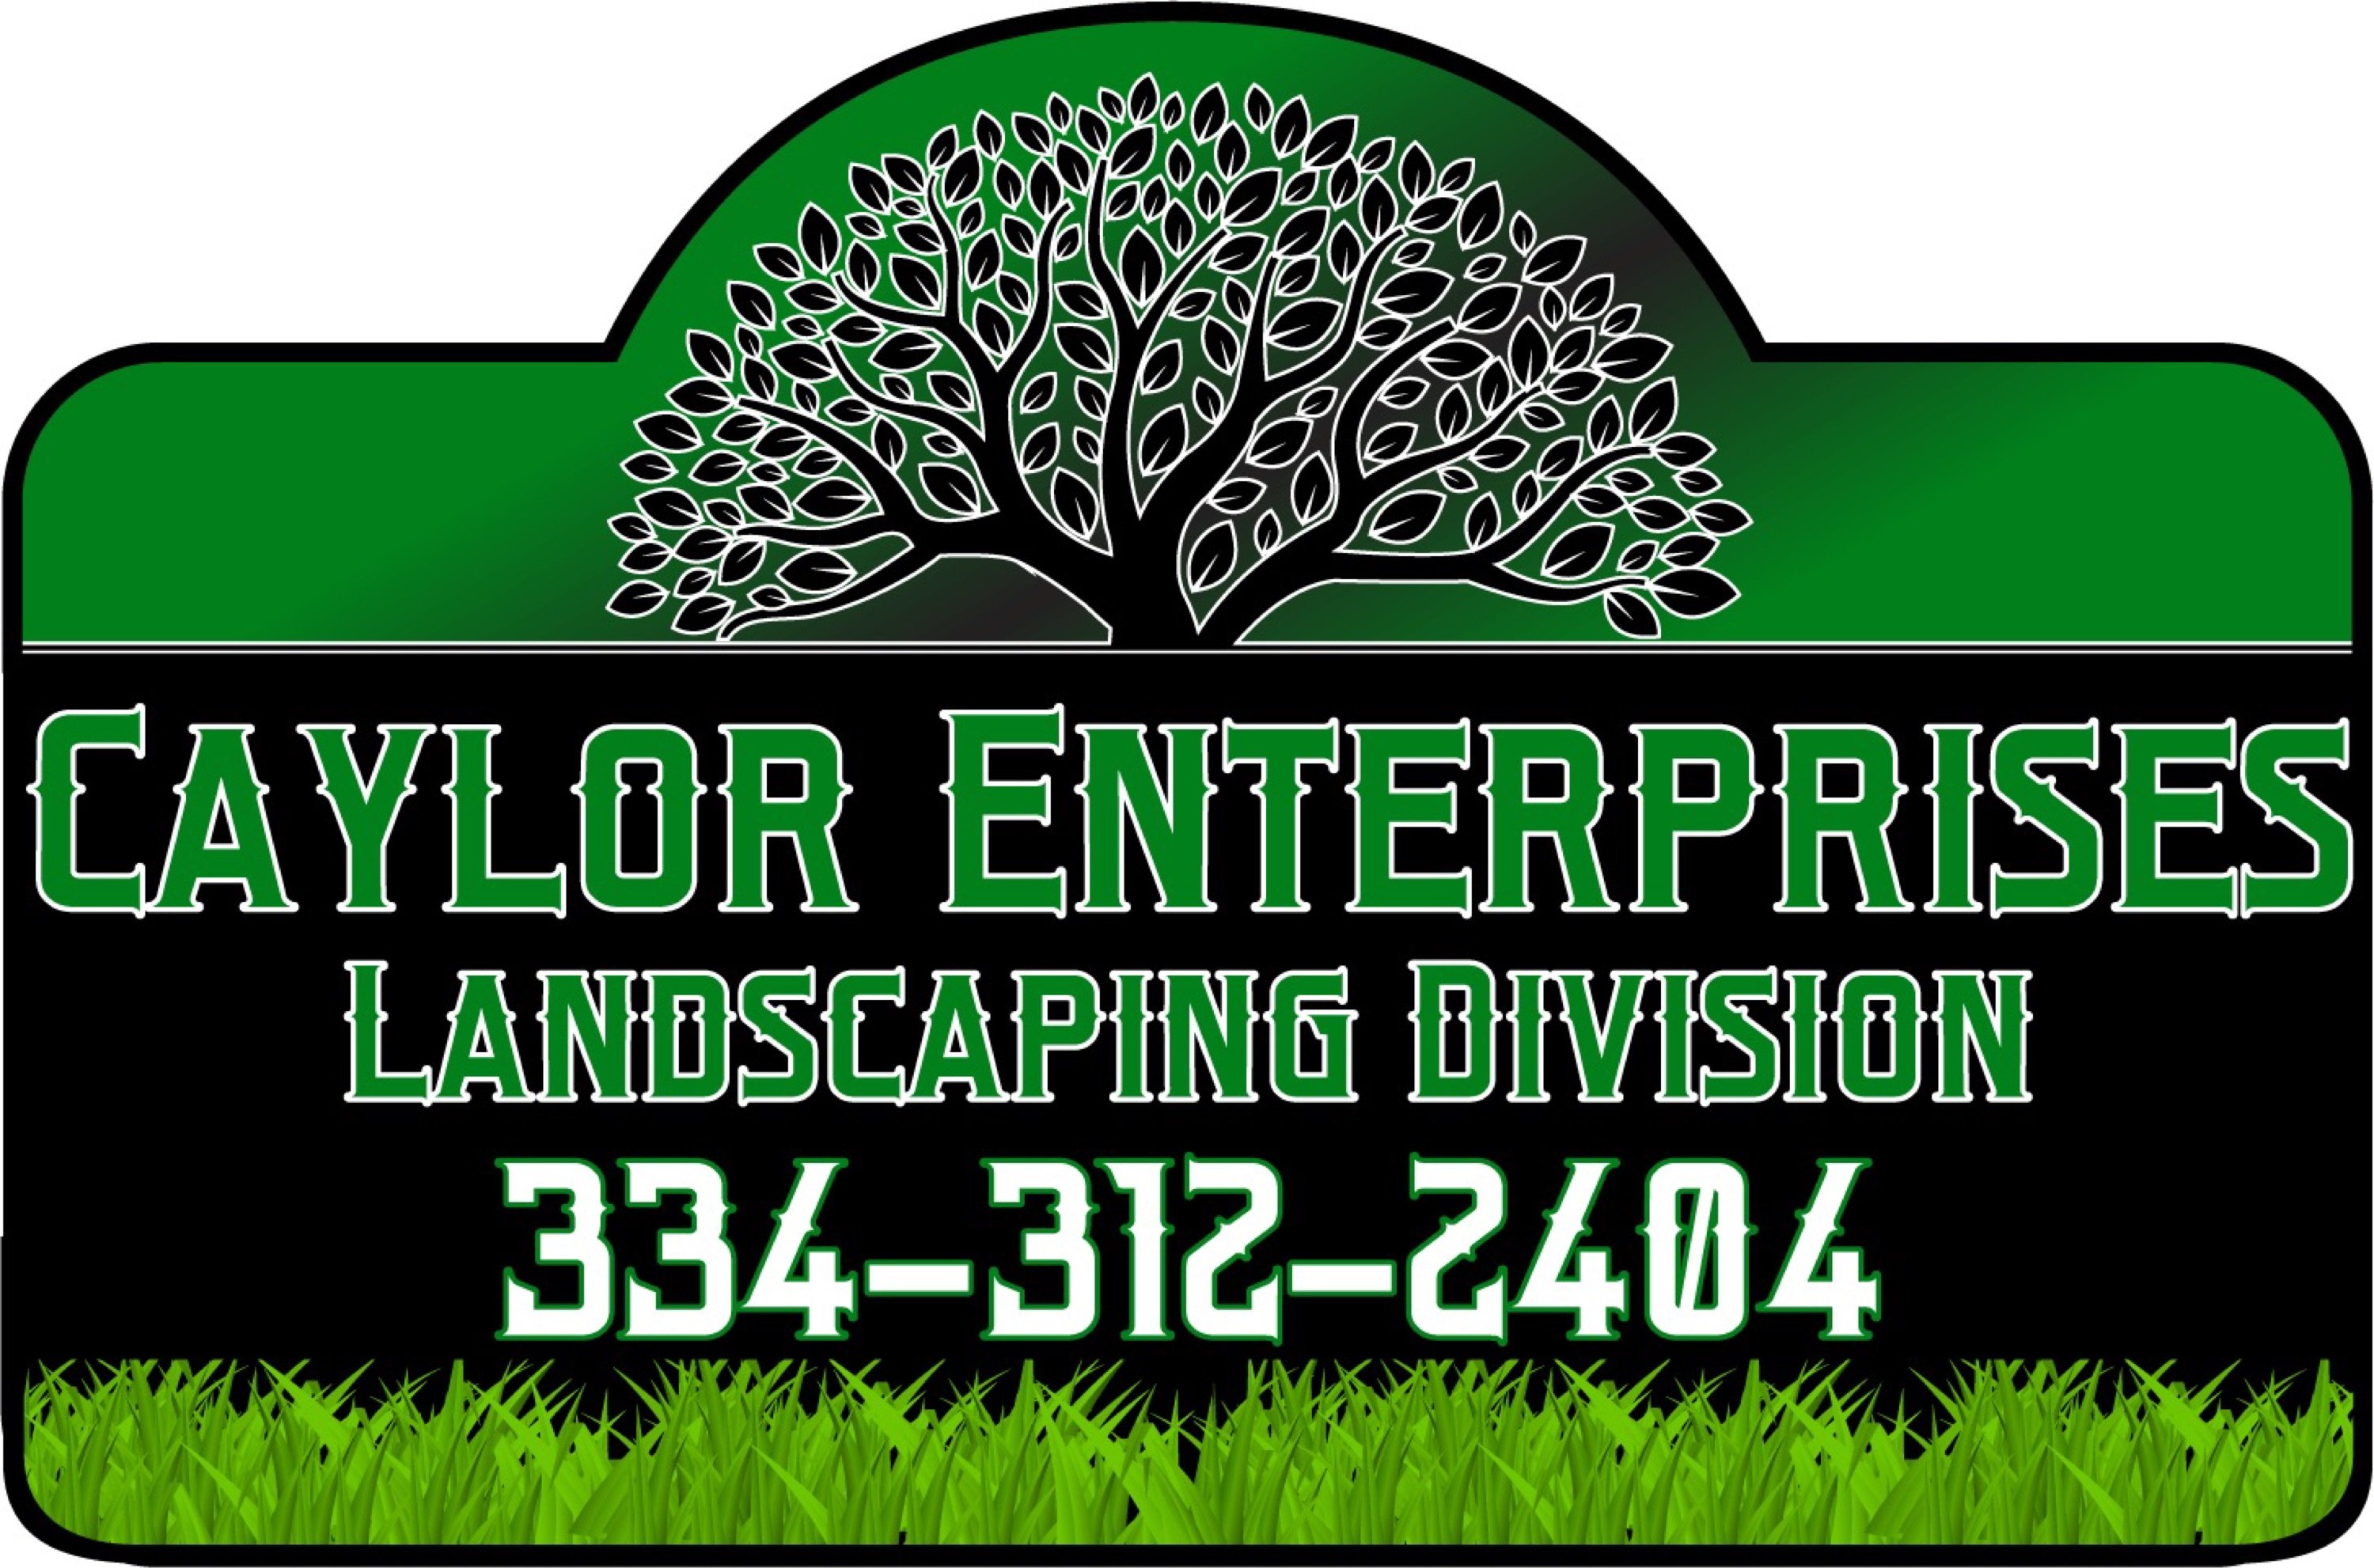 Caylor Enterprise Landscaping Logo